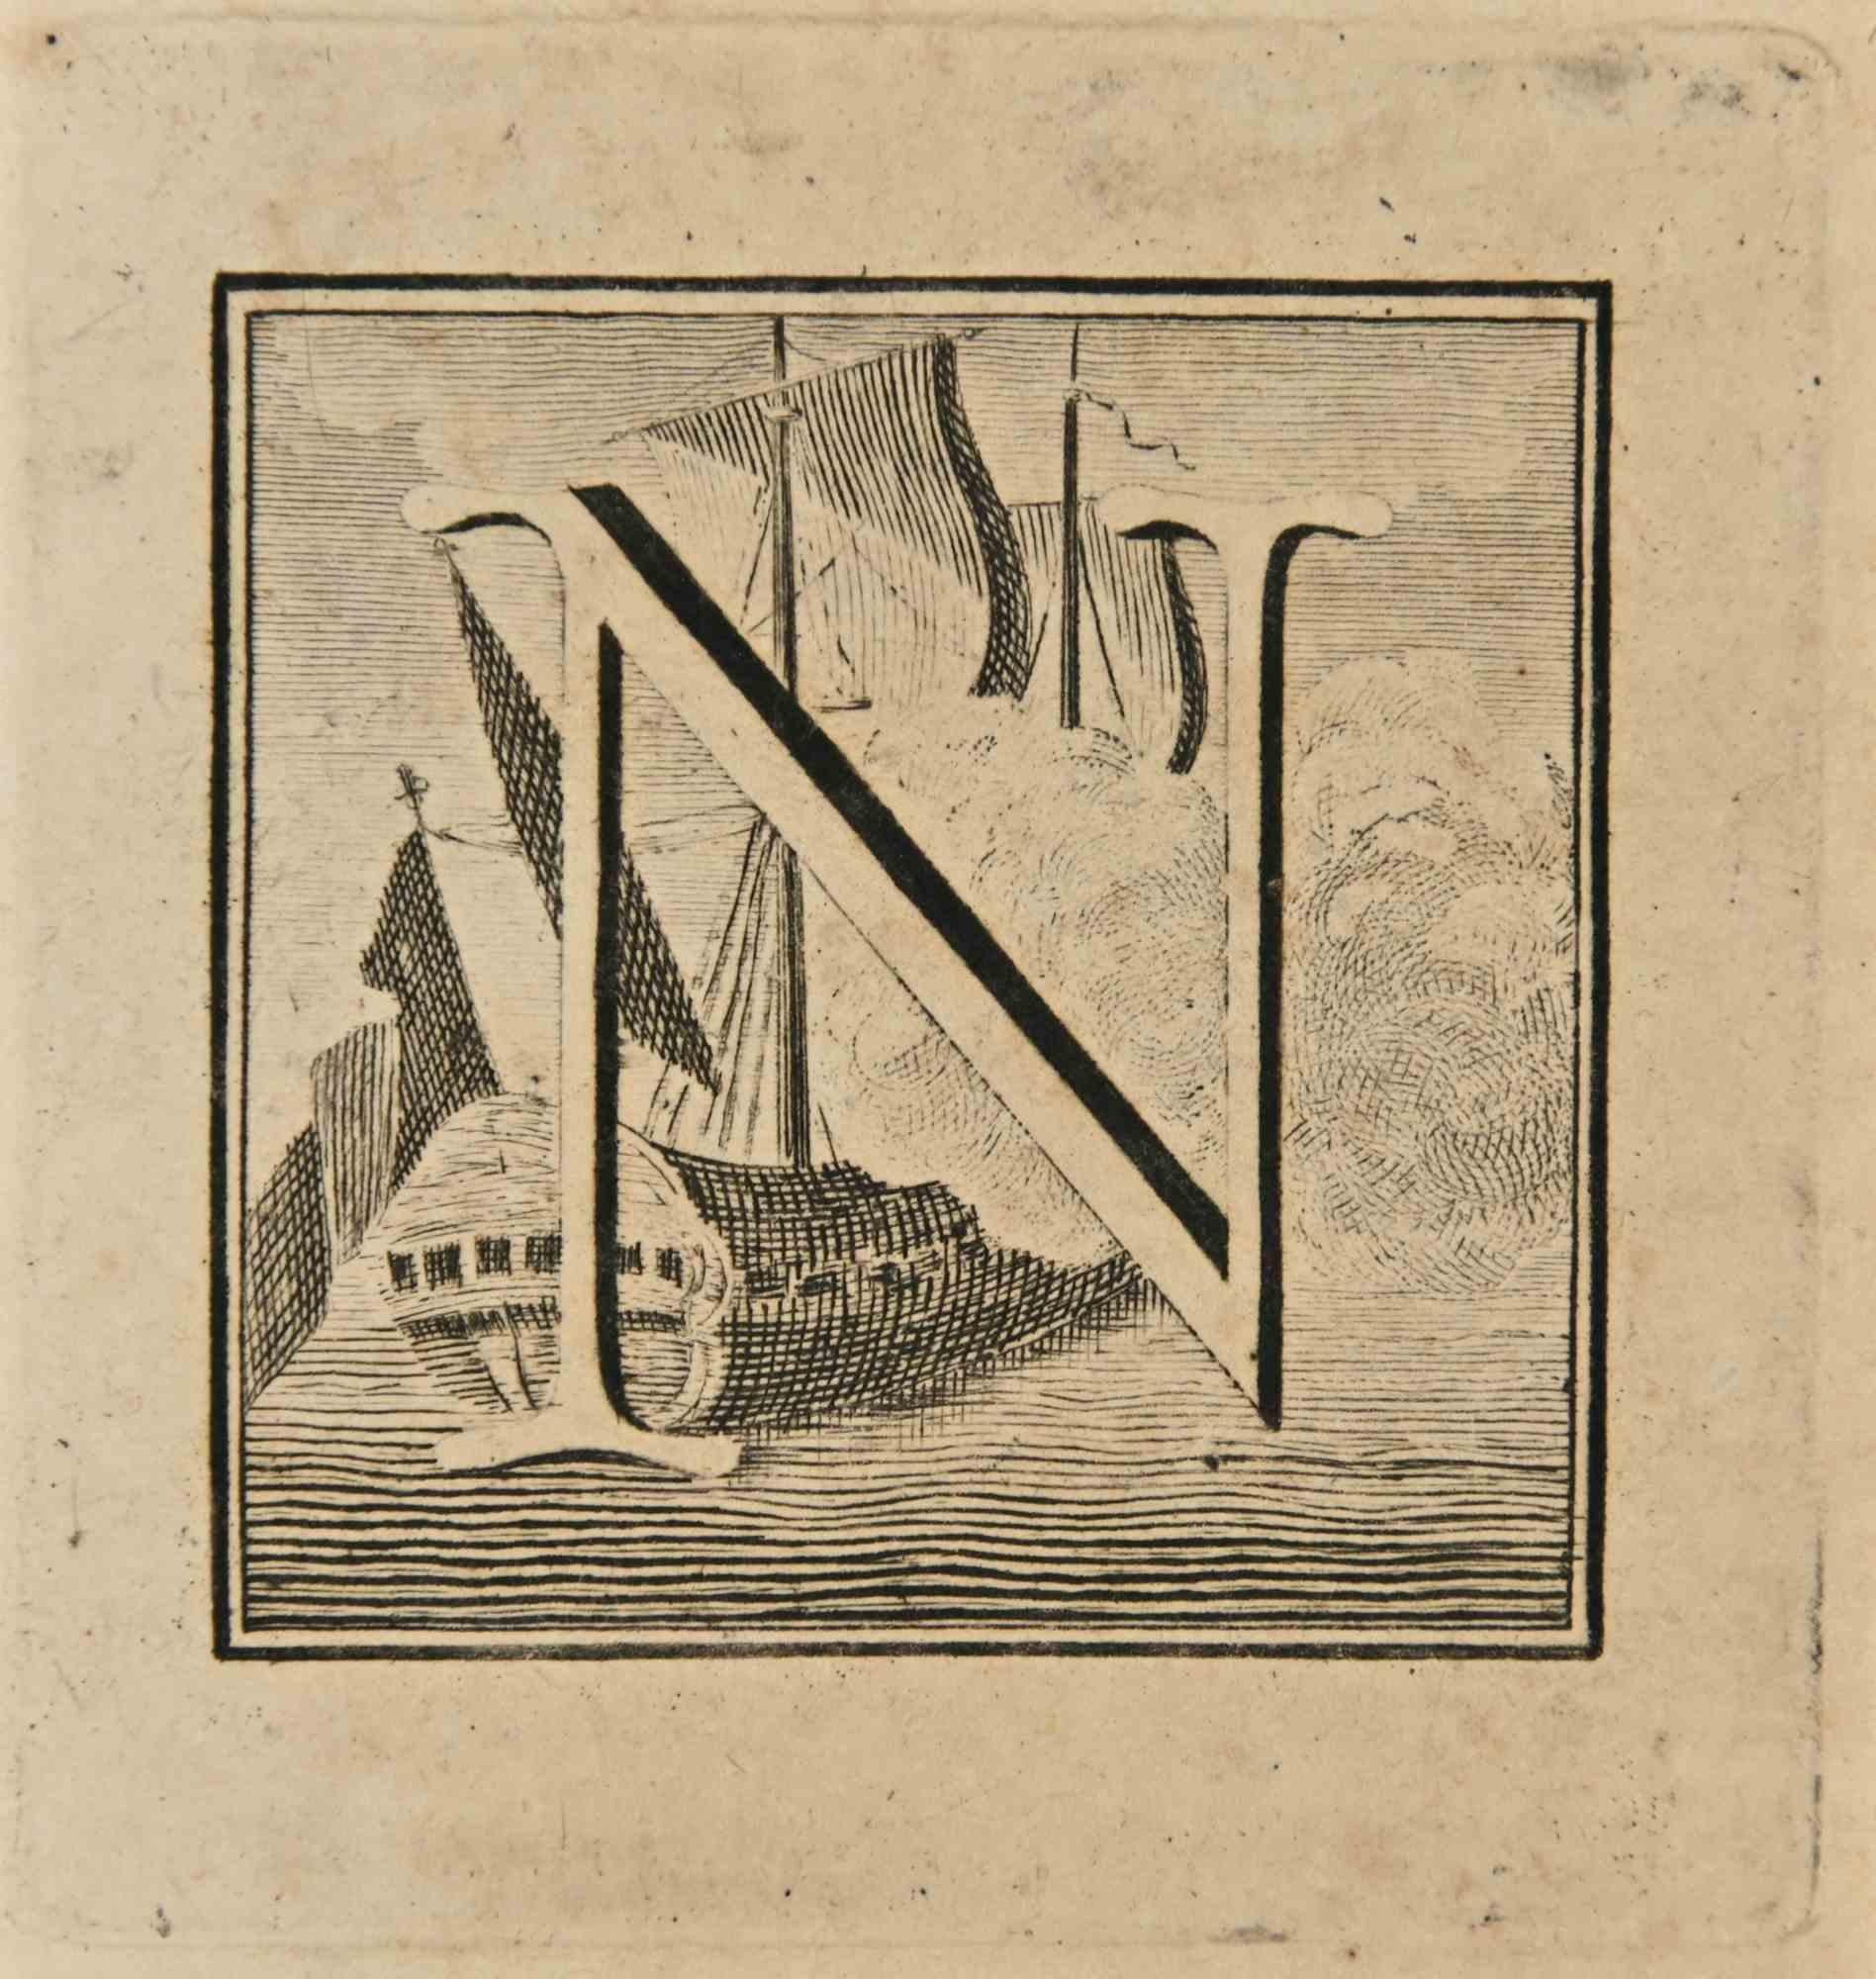 Lettre de l'alphabet N,  de la série "Antiquités d'Herculanum", est une gravure sur papier réalisée par Luigi Vanvitelli au 18ème siècle.

Bonnes conditions.

La gravure appartient à la suite d'estampes "Antiquités d'Herculanum exposées" (titre